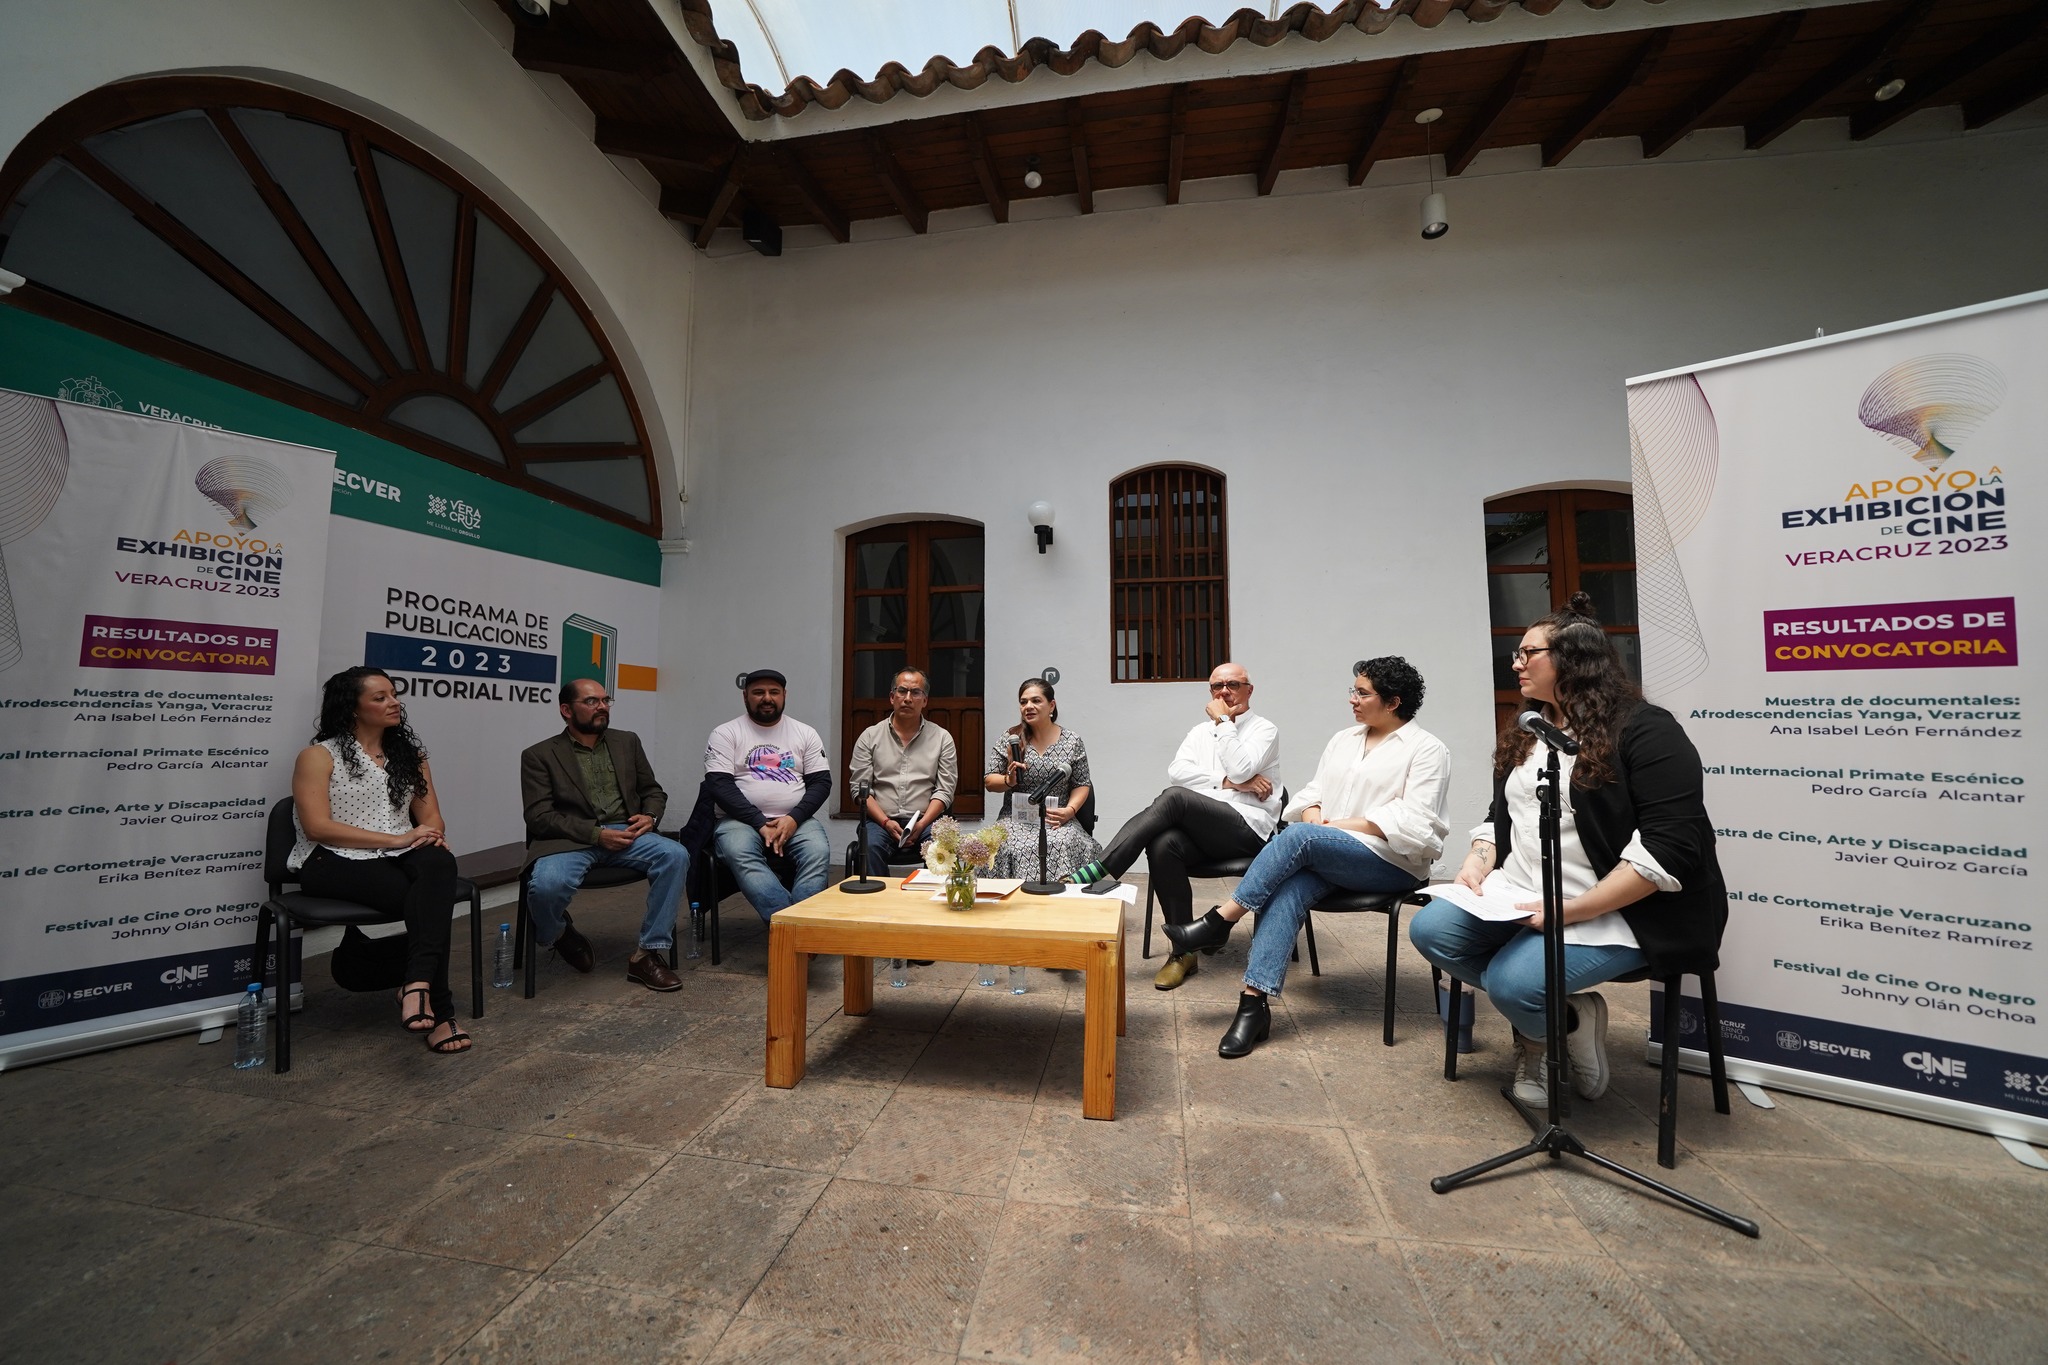 IVEC da a conocer ganadores de convocatoria “Apoyo a la exhibición de cine Veracruz 2023”